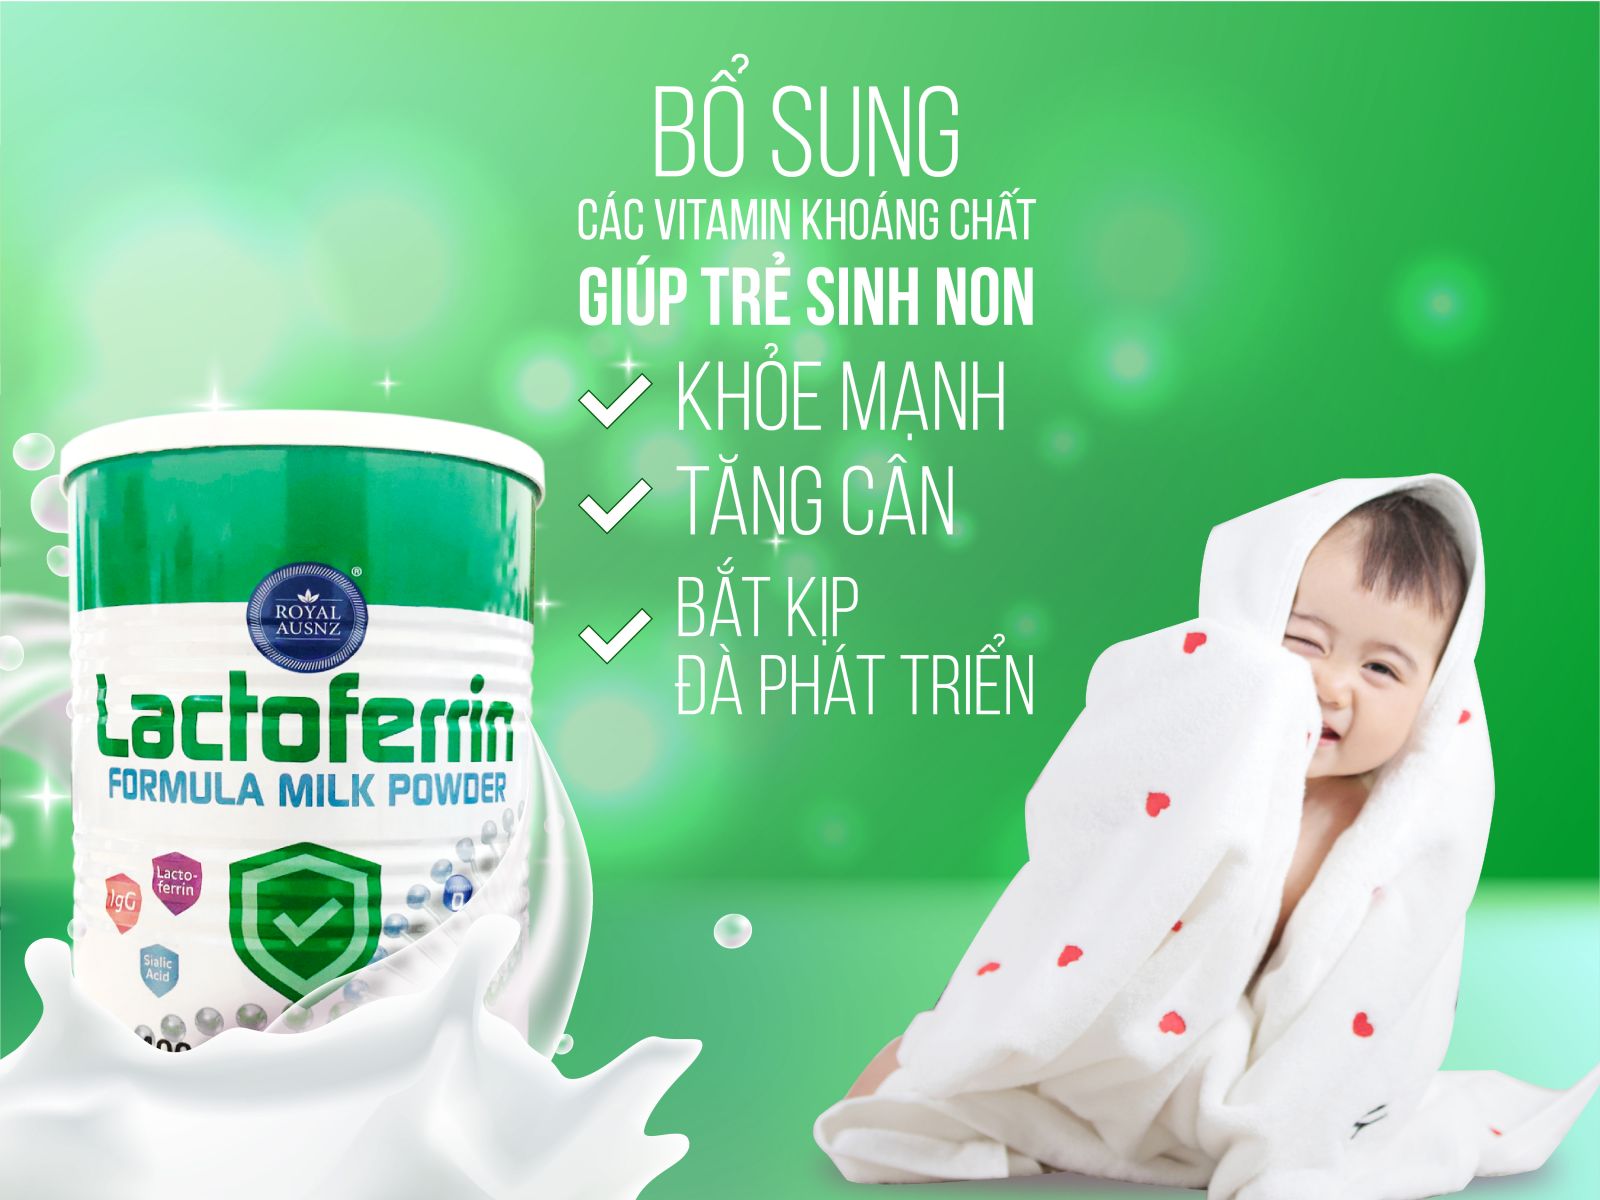 Royal Ausnz Lactoferrin Formula Milk Powder bổ sung sữa non (IgG) cùng các vitamin và khoáng chất thiết yếu cho bé khỏe mạnh